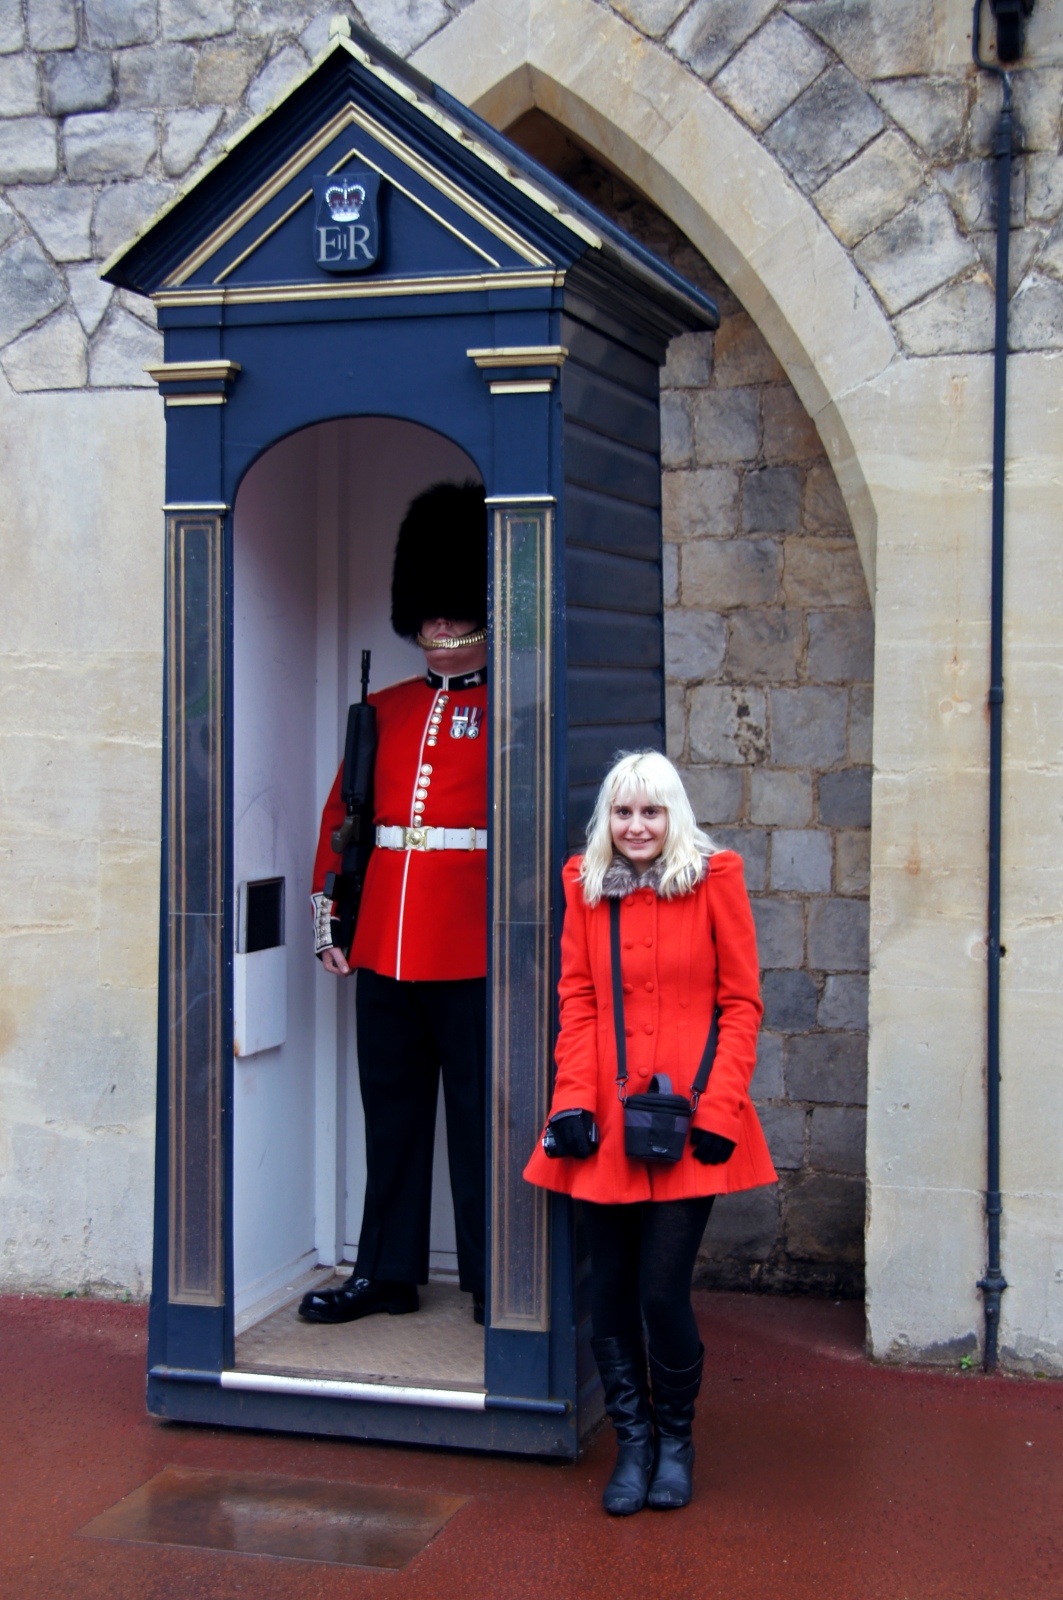 Guard at Windsor Castle